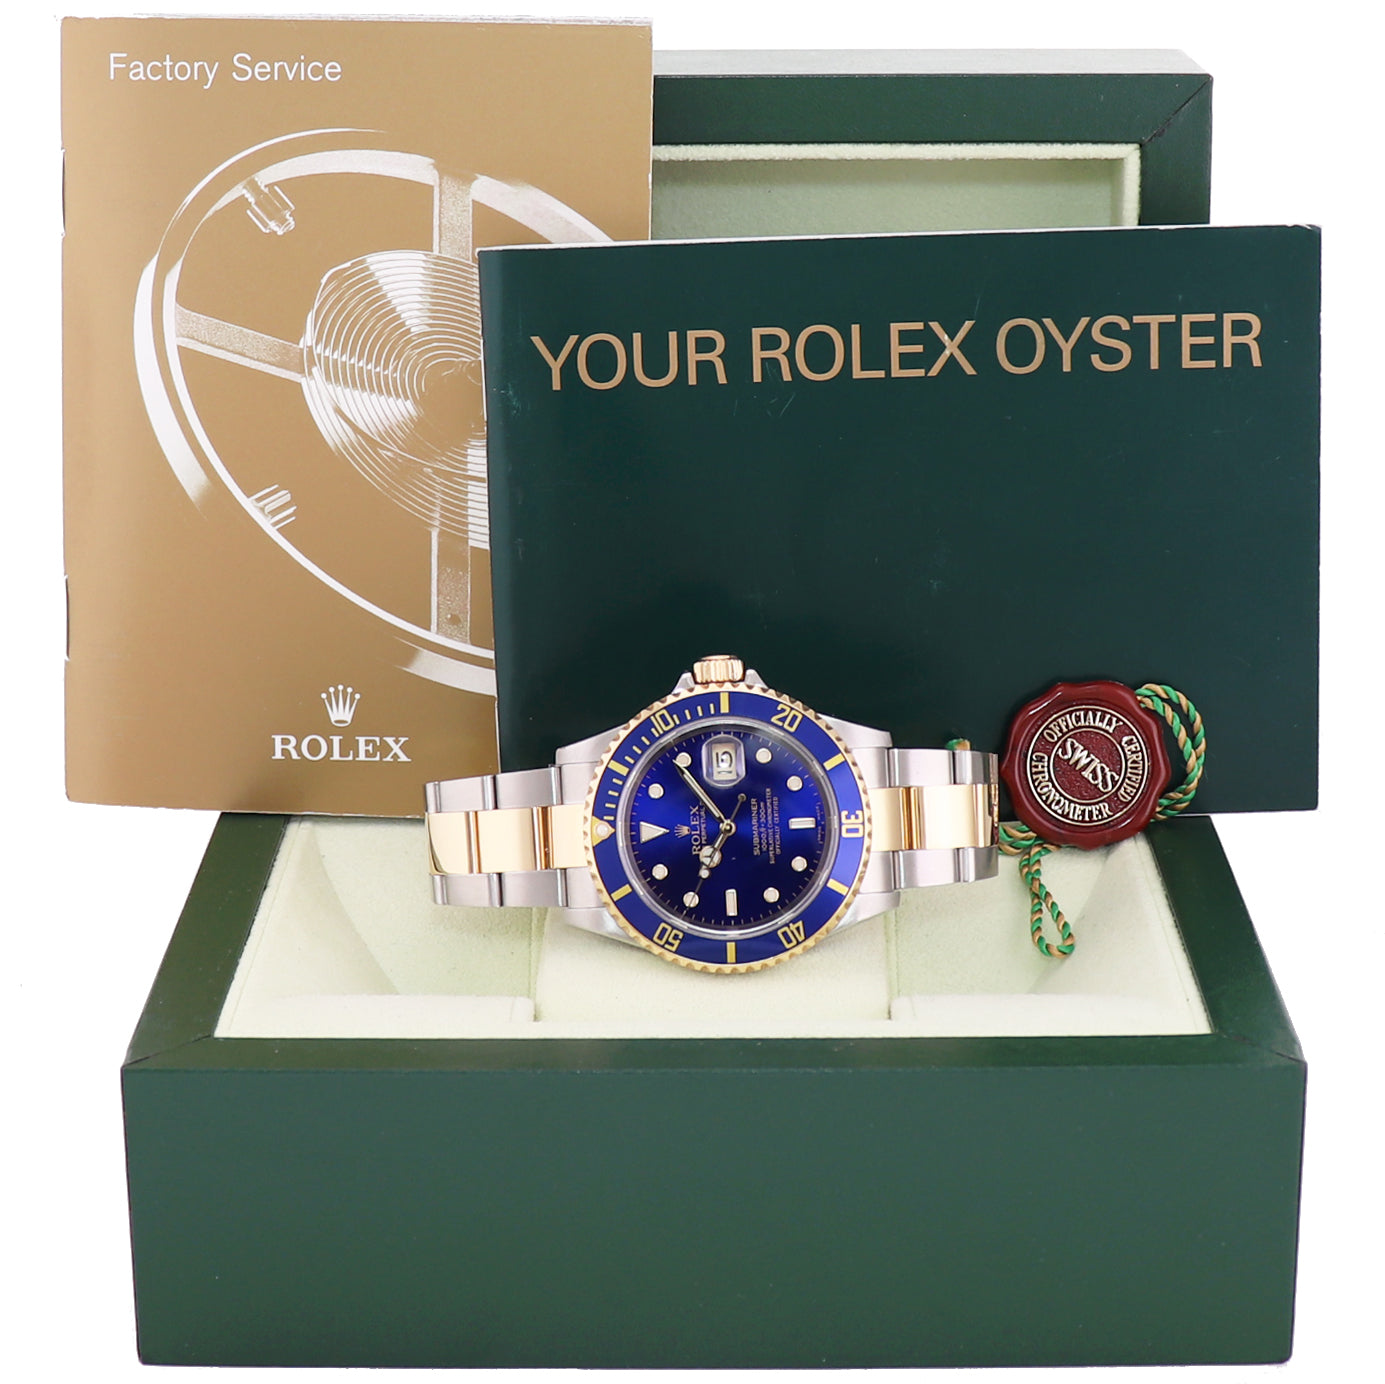 MINT 2004 Rolex Submariner 16613 Steel Two Tone Gold Buckle Sunburst Blue Watch